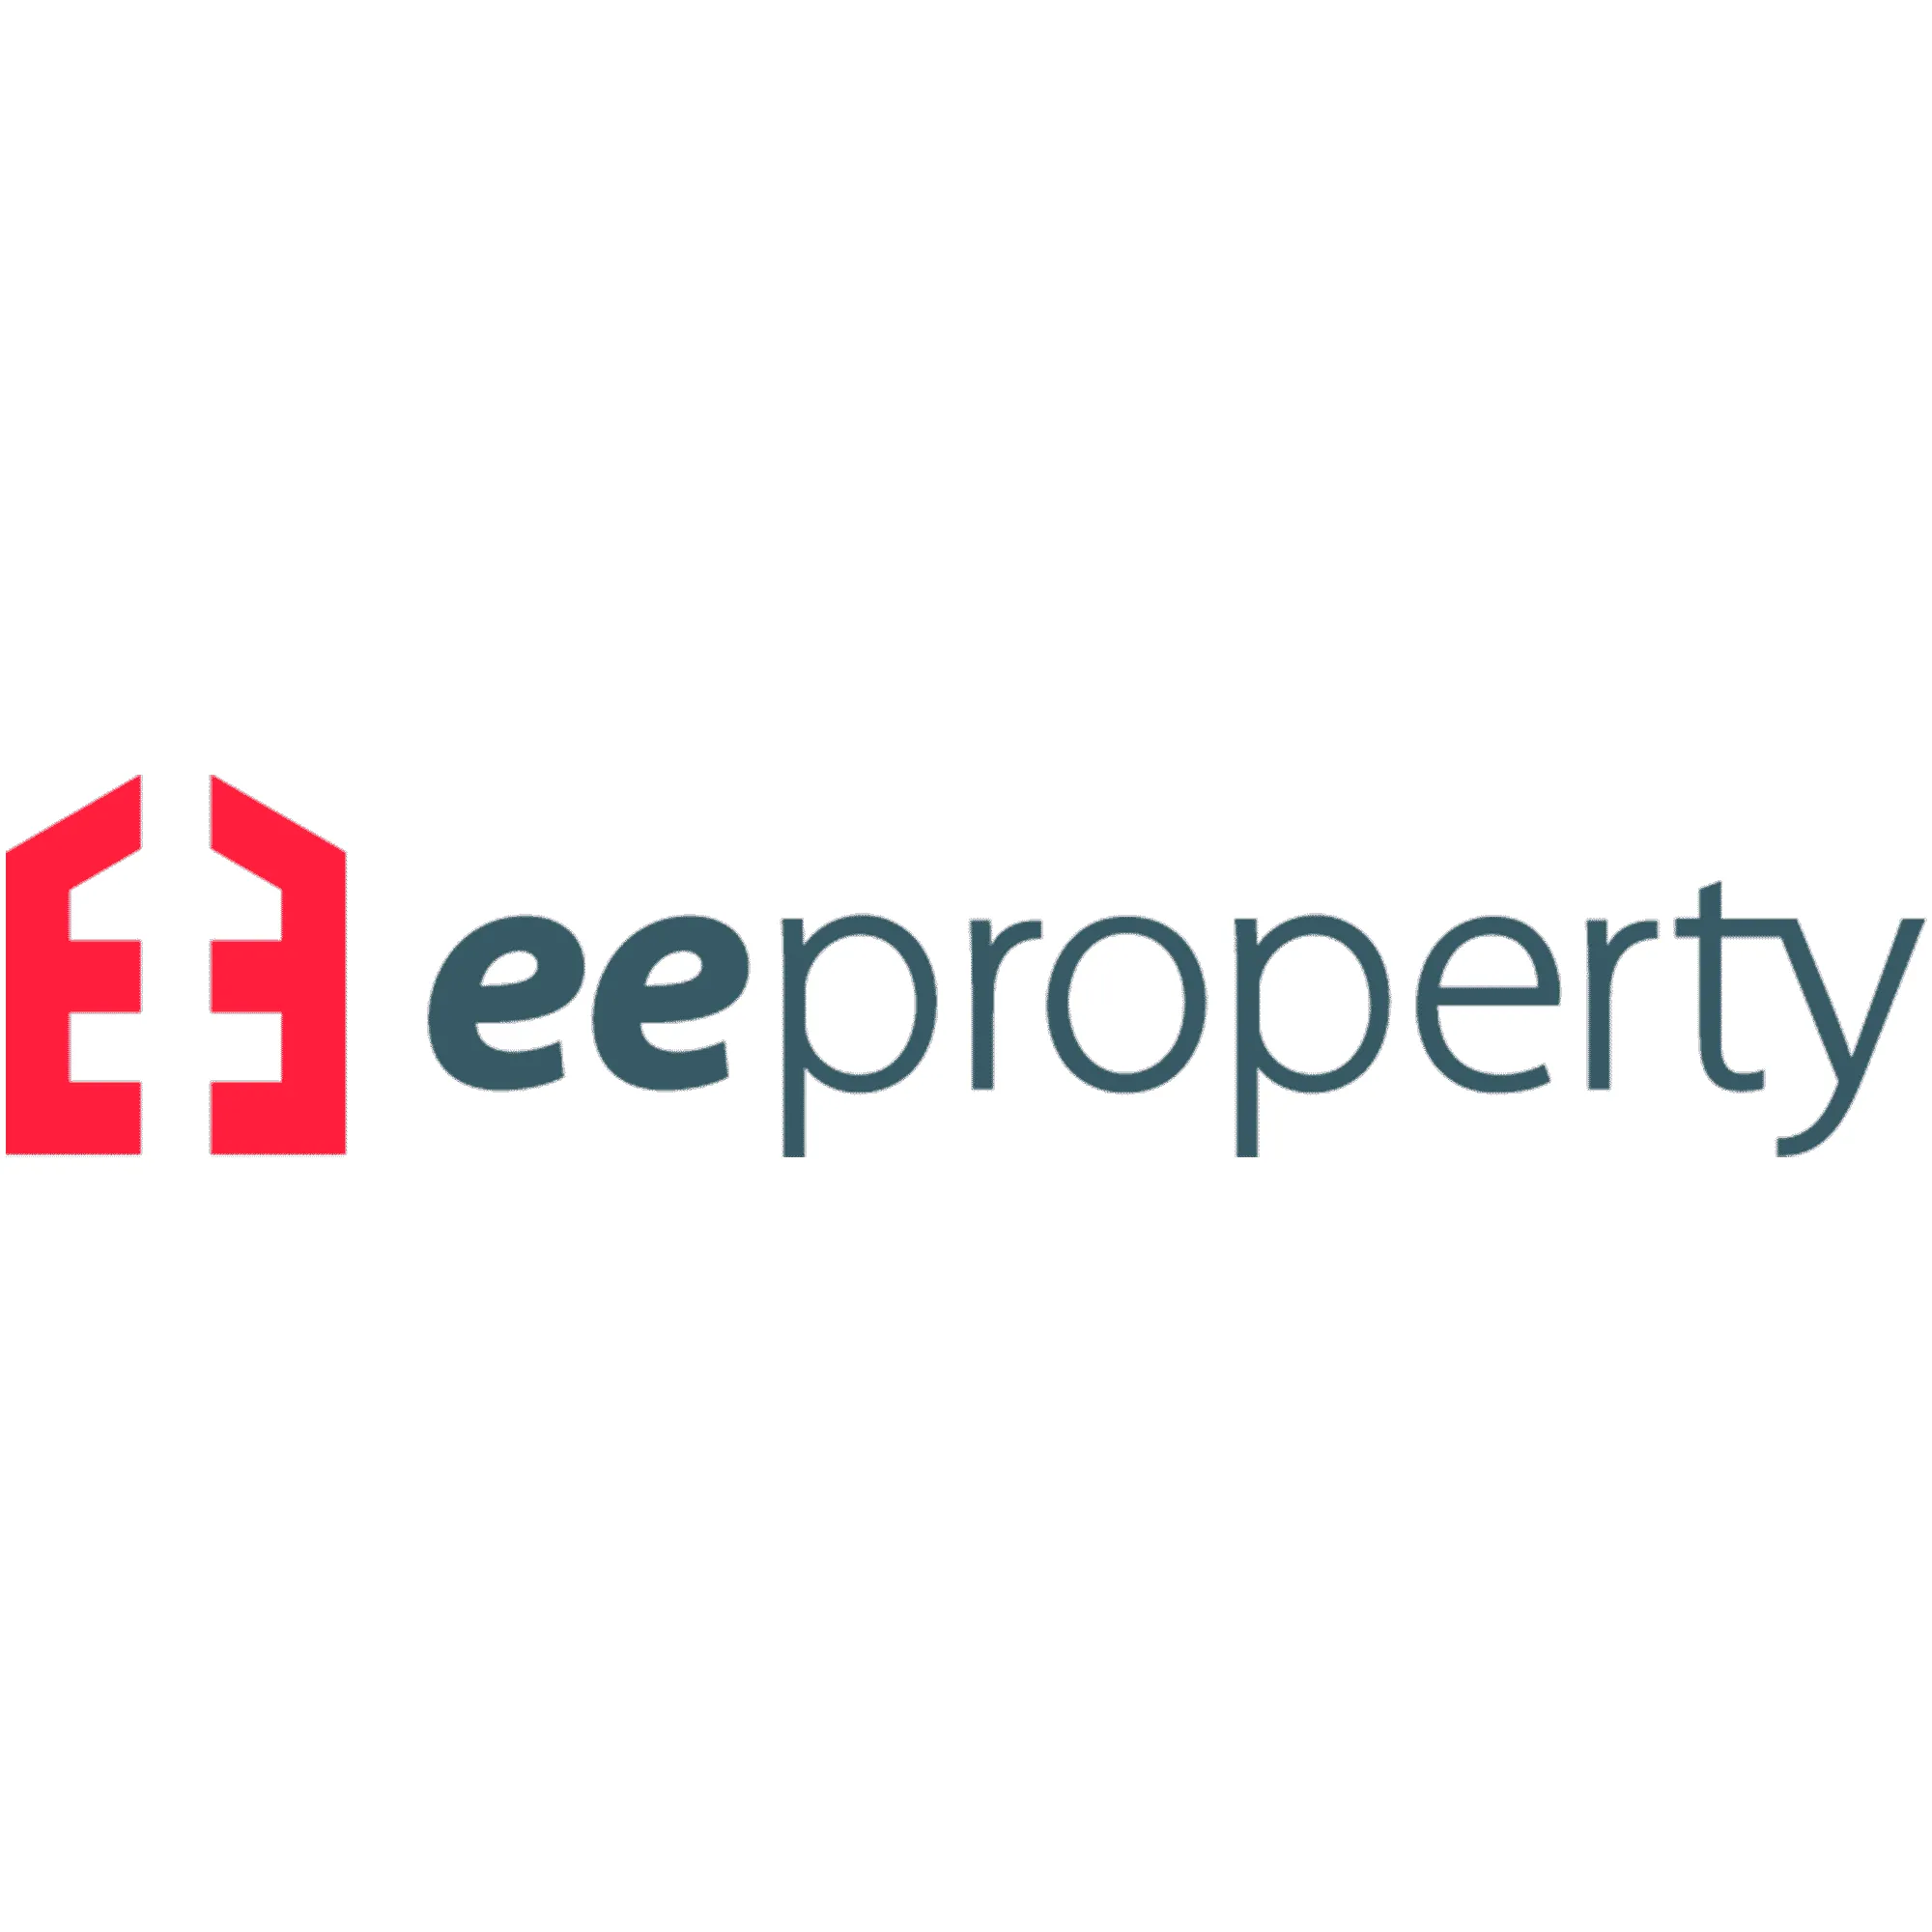 eeproperty logo